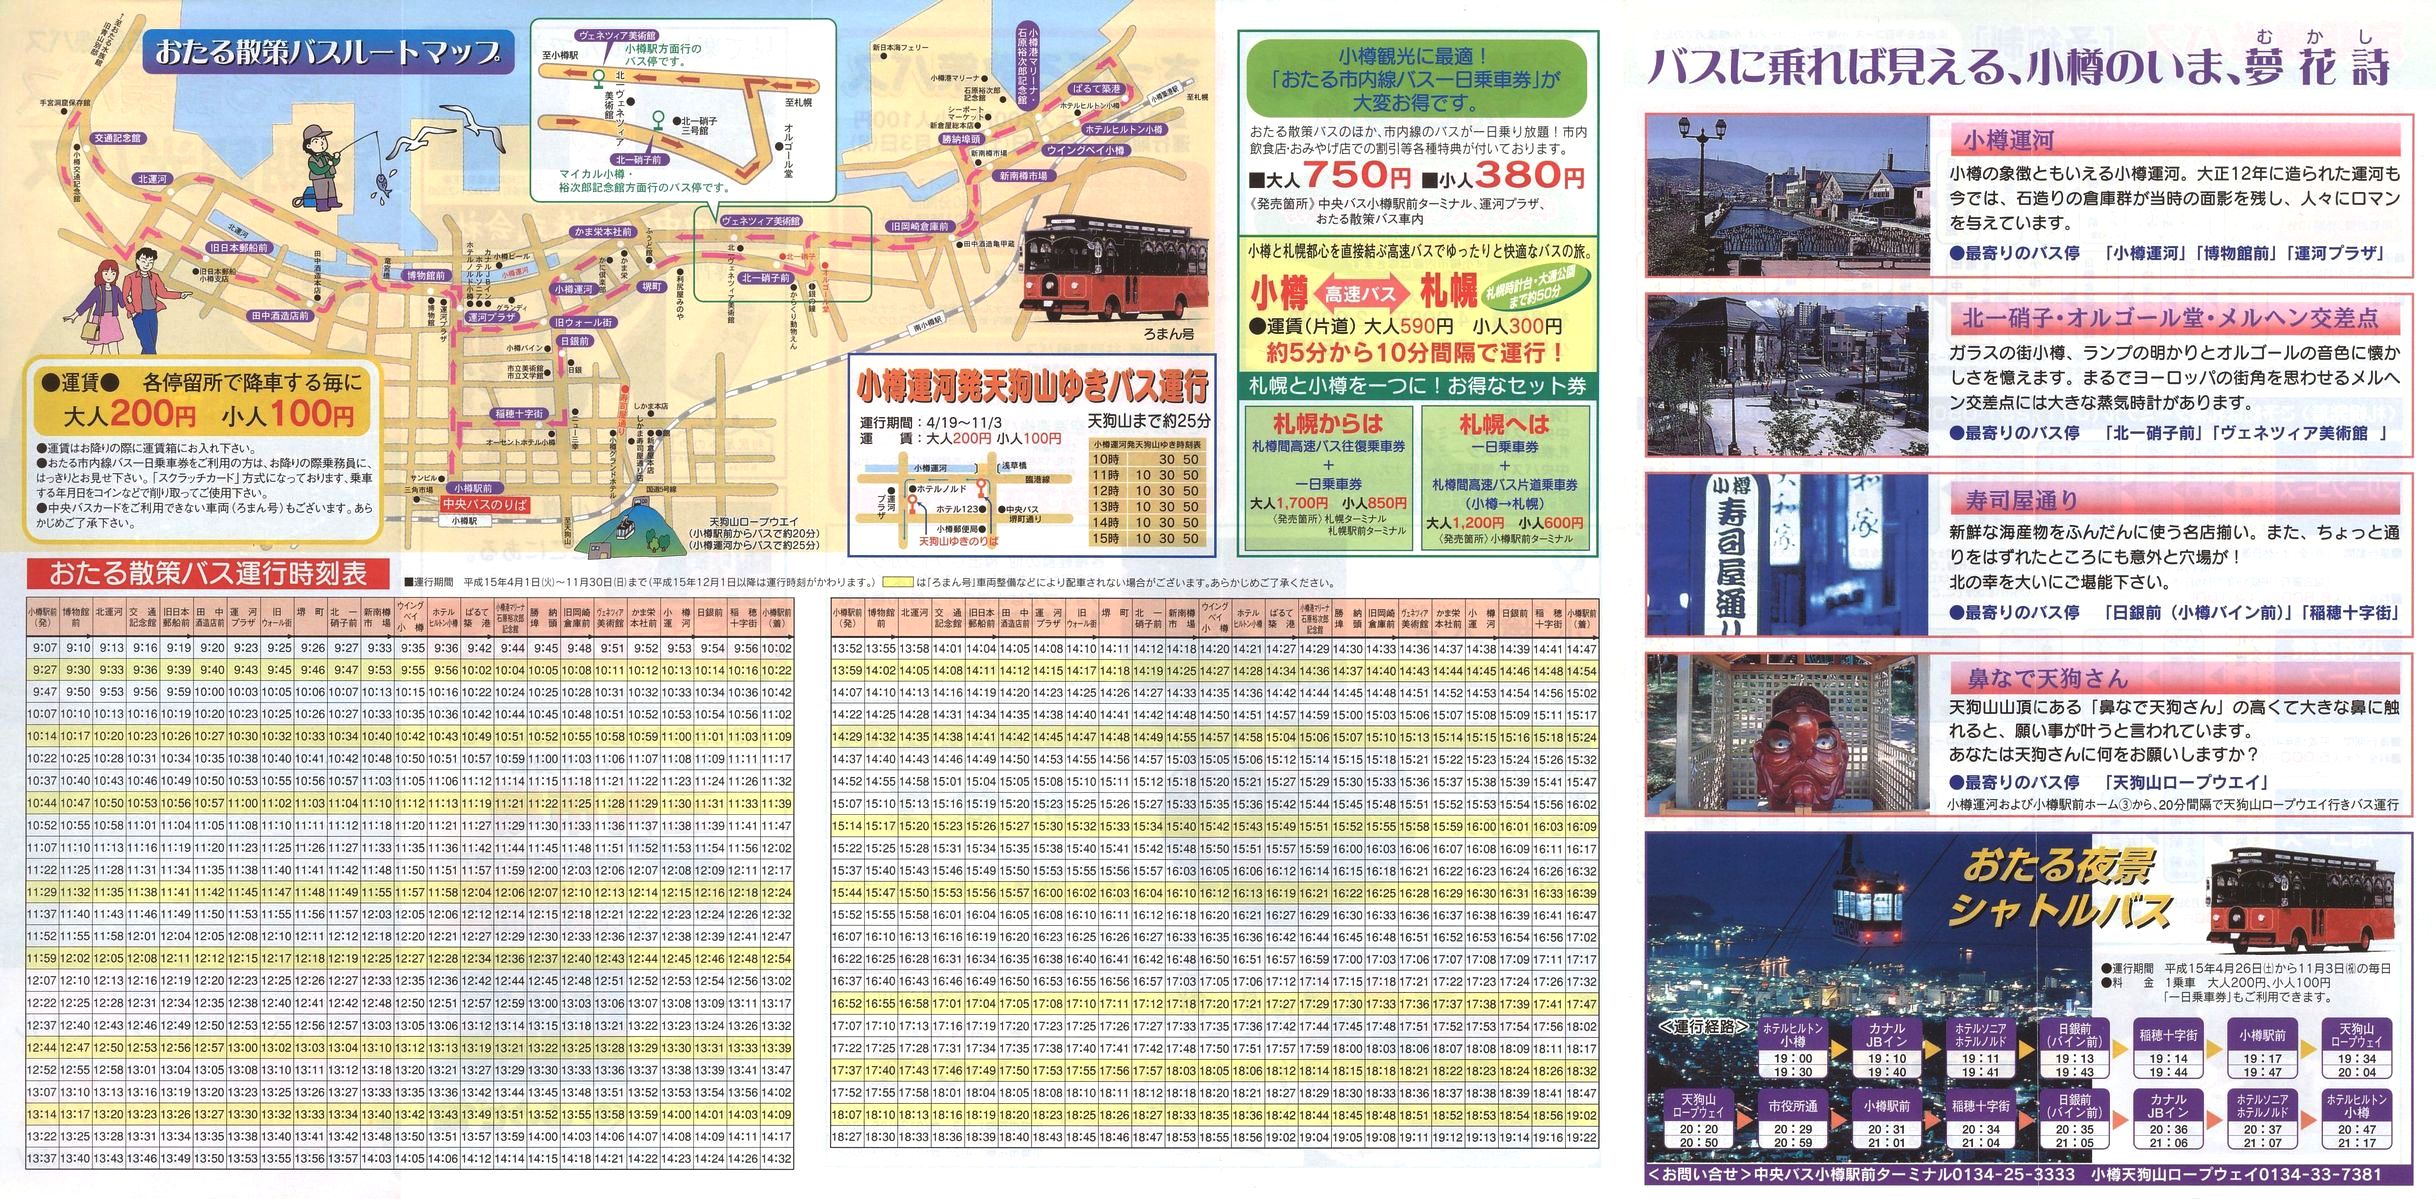 2003-04-01改正_北海道中央バス(小樽)_おたる散策バス・小樽市内定期観光バスチラシ裏面